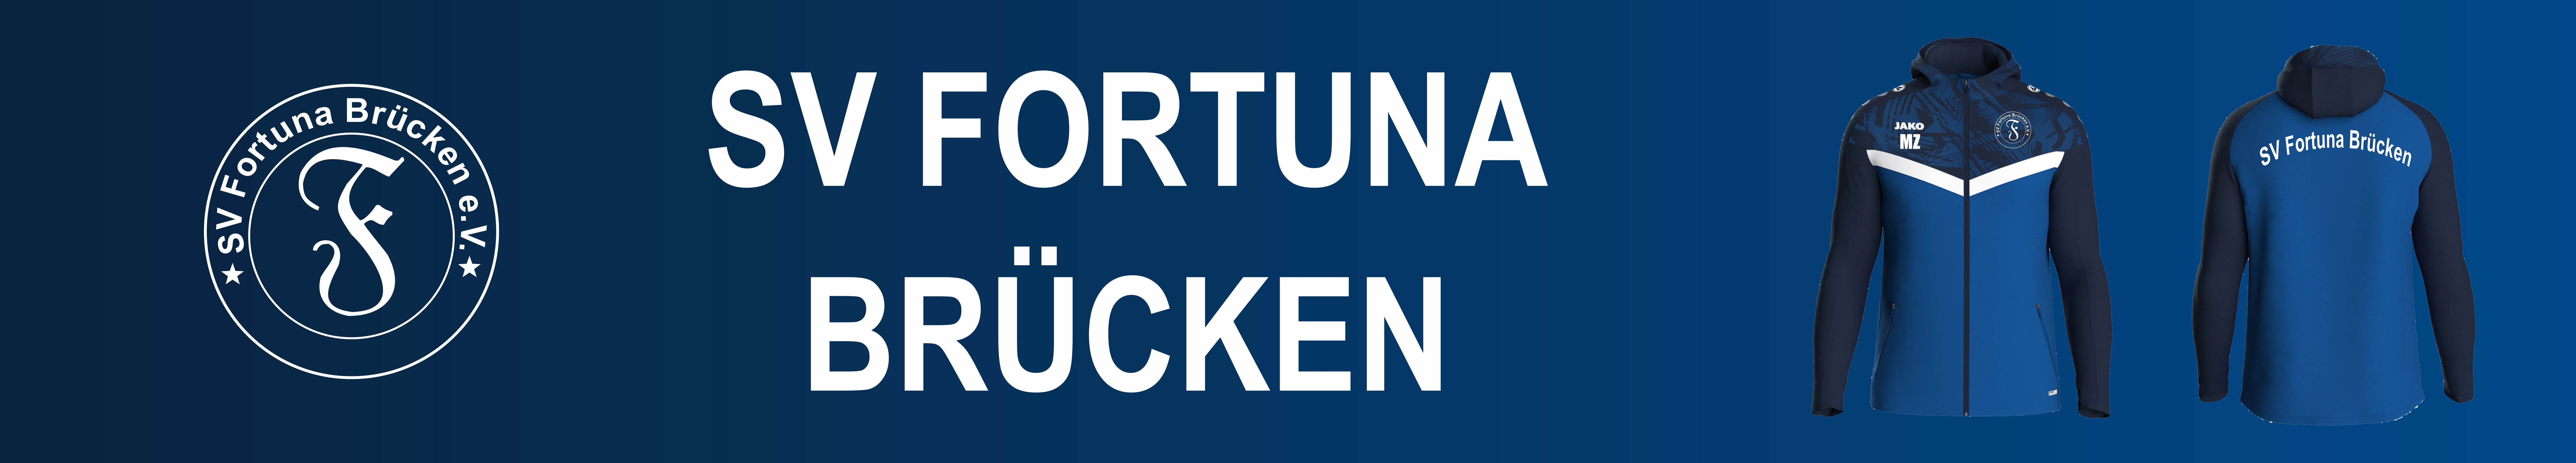 SV Fortuna Brücken Title Image